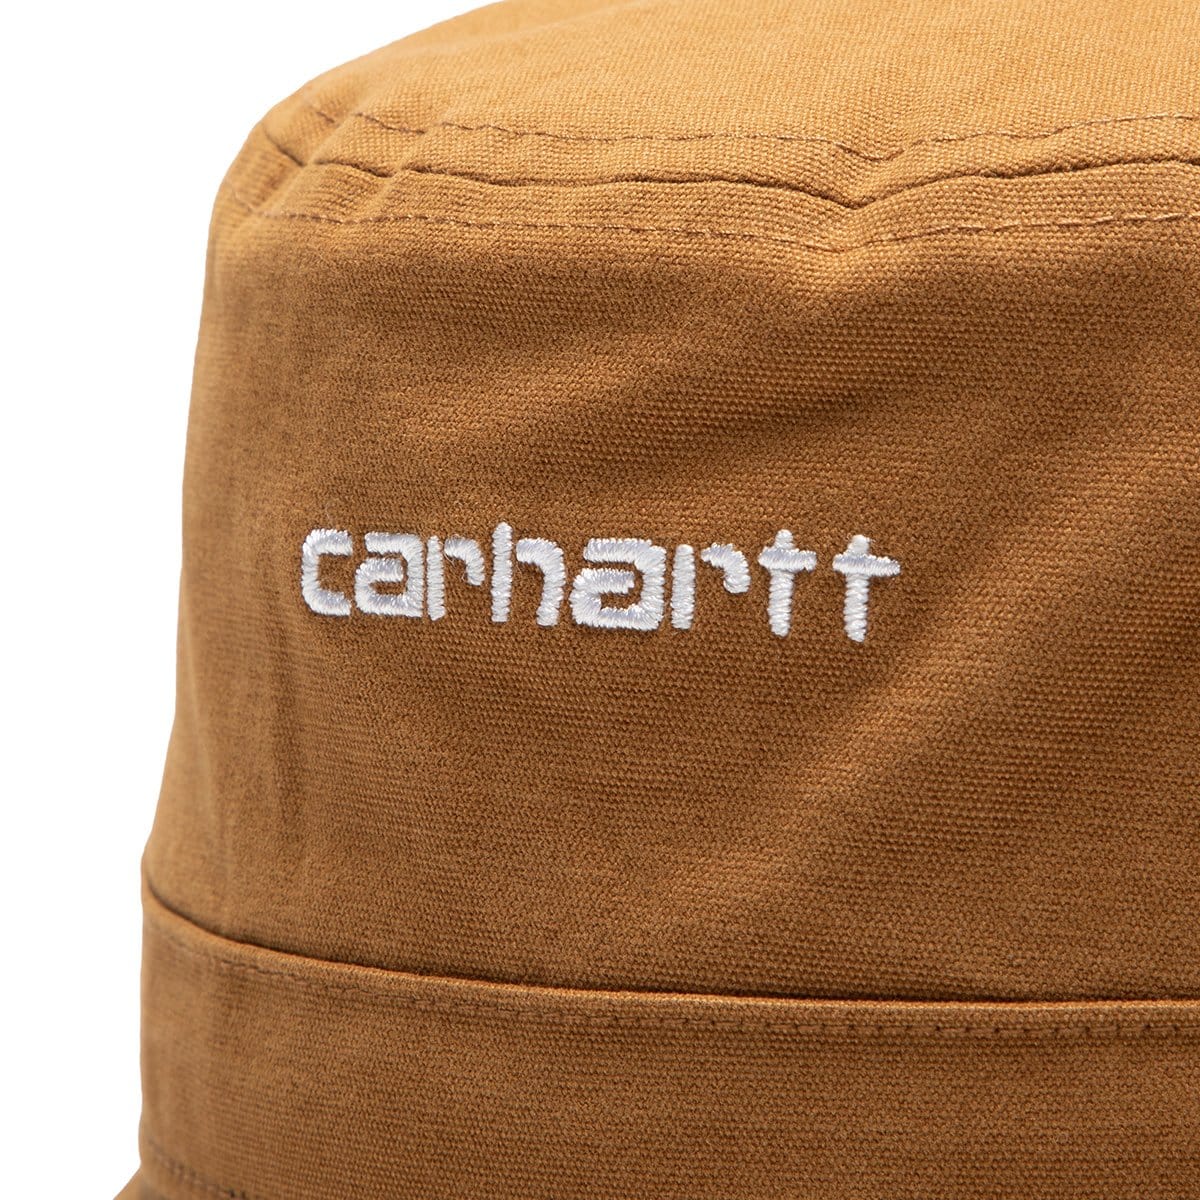 Carhartt W.I.P. Headwear SCRIPT BUCKET HAT